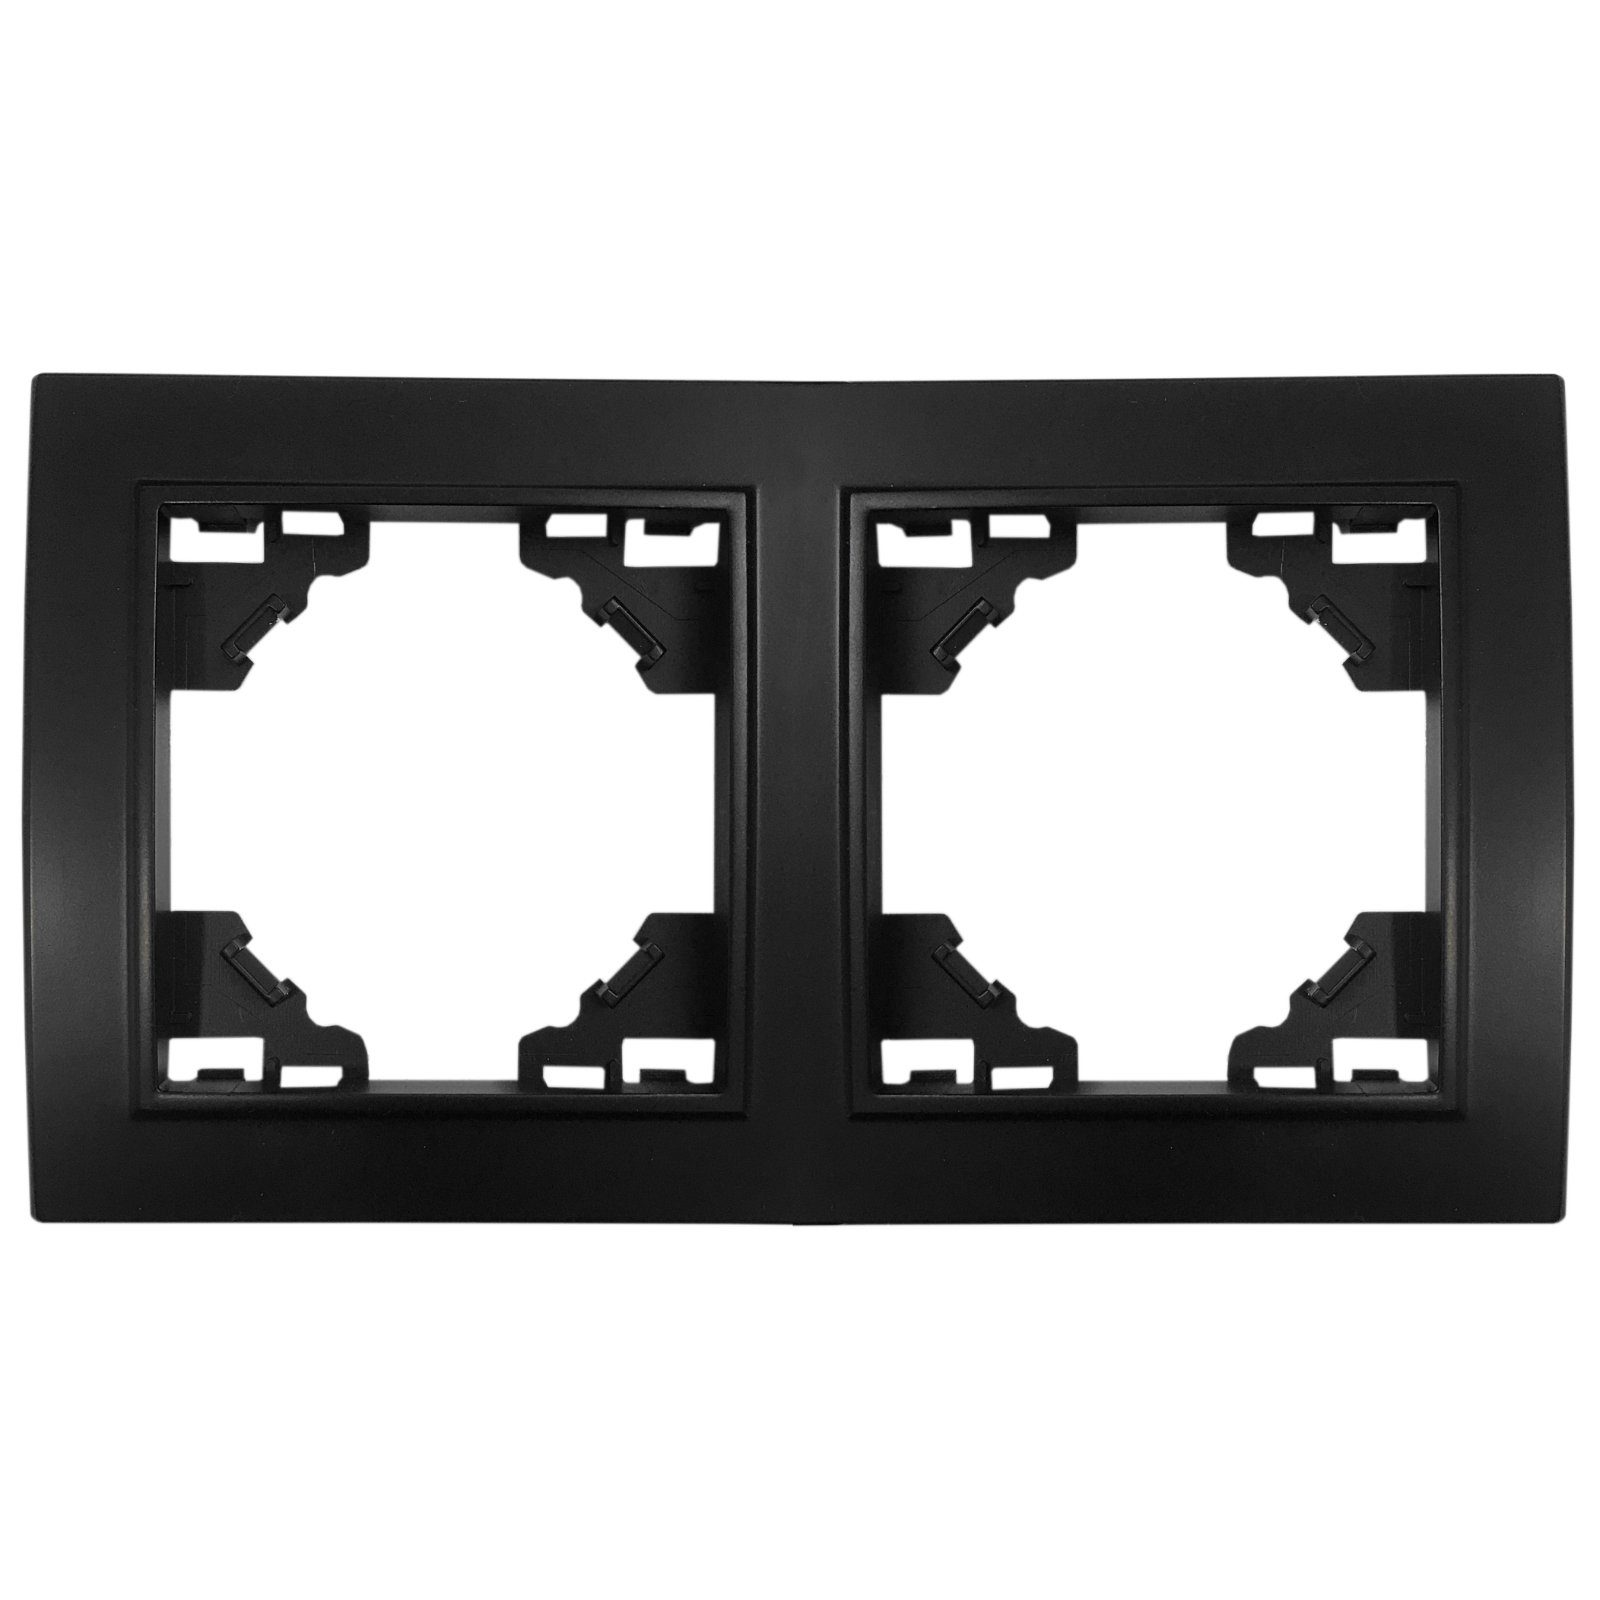 ADELID Schalter, Rahmen 2-Fach für Steckdosen Schalter Unterputz 153x82x8mm horizontal Schwarz Matt